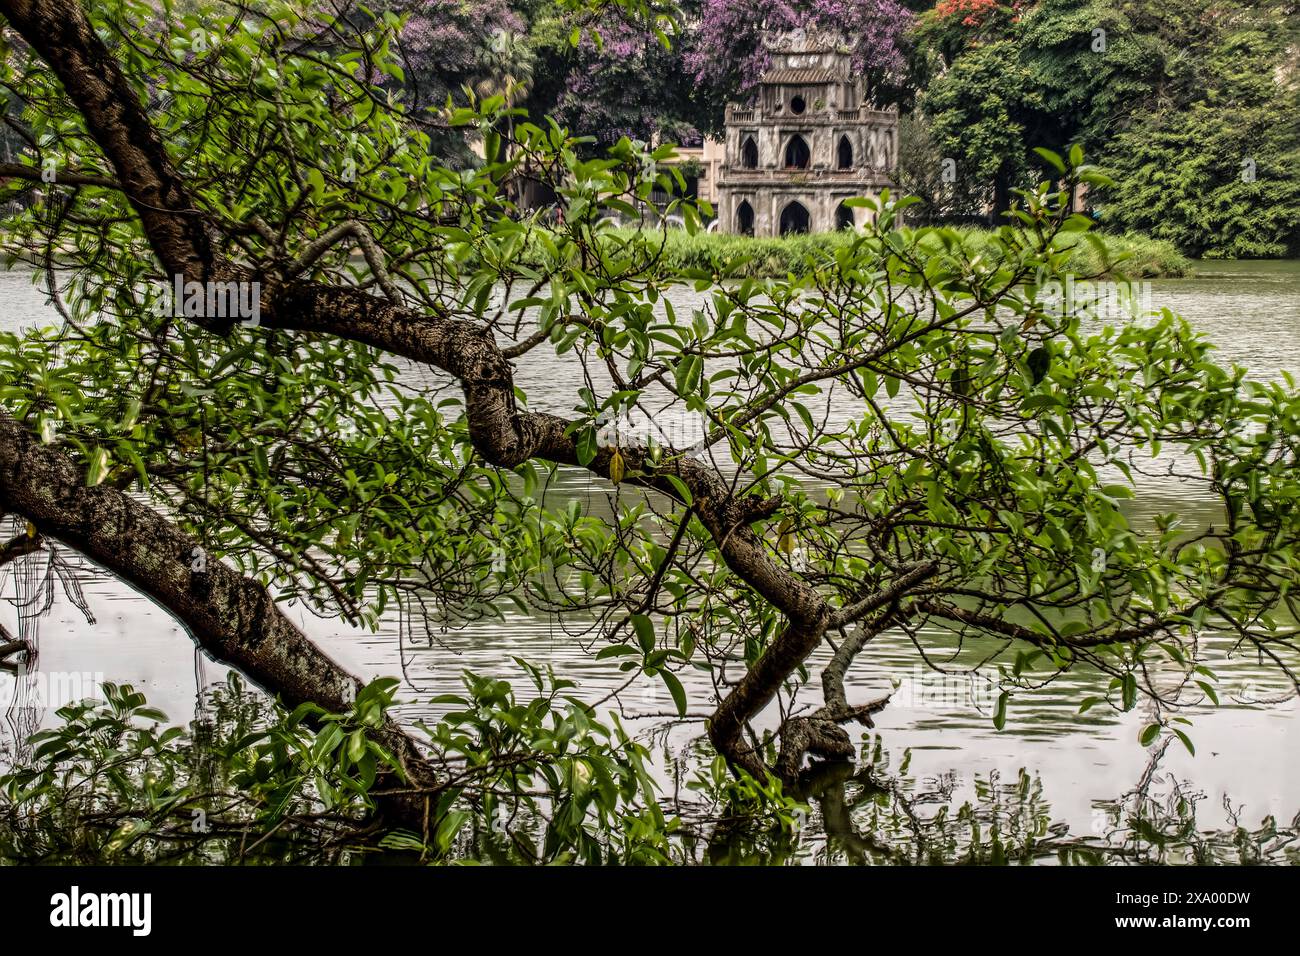 Accattivante, sorprendente, mozzafiato, avvincente, eccellente, gloriosa e intrigante Torre delle tartarughe imperdibili nel lago Hoan Kiem, città vecchia di Hanoi, Vietnam Foto Stock